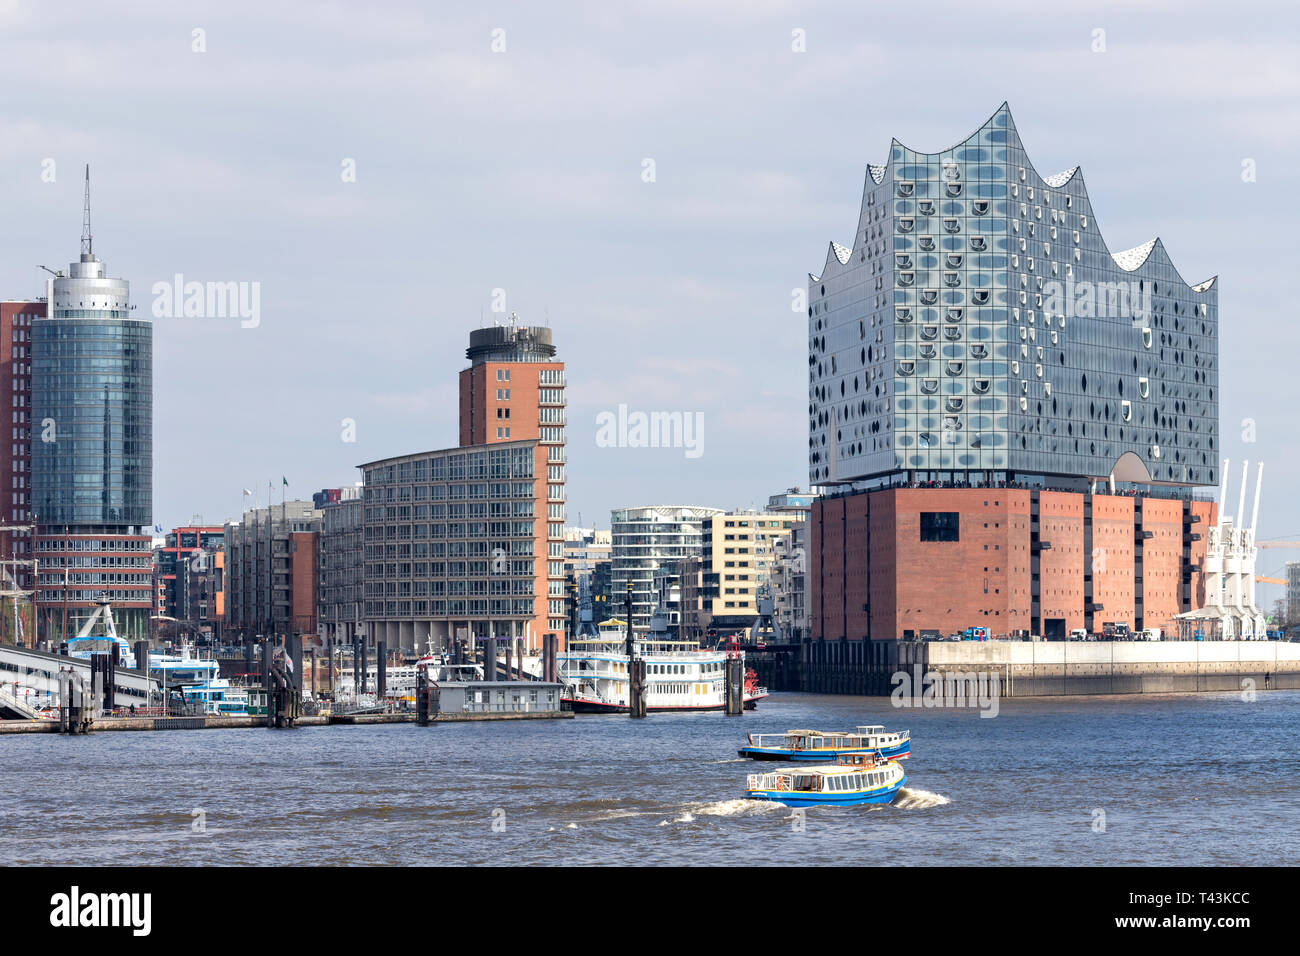 L'Elbphilharmonie dans le quartier HafenCity de Hambourg. C'est l'un des plus grands et des plus avancés sur le plan acoustique des salles de concert dans le monde entier. Banque D'Images